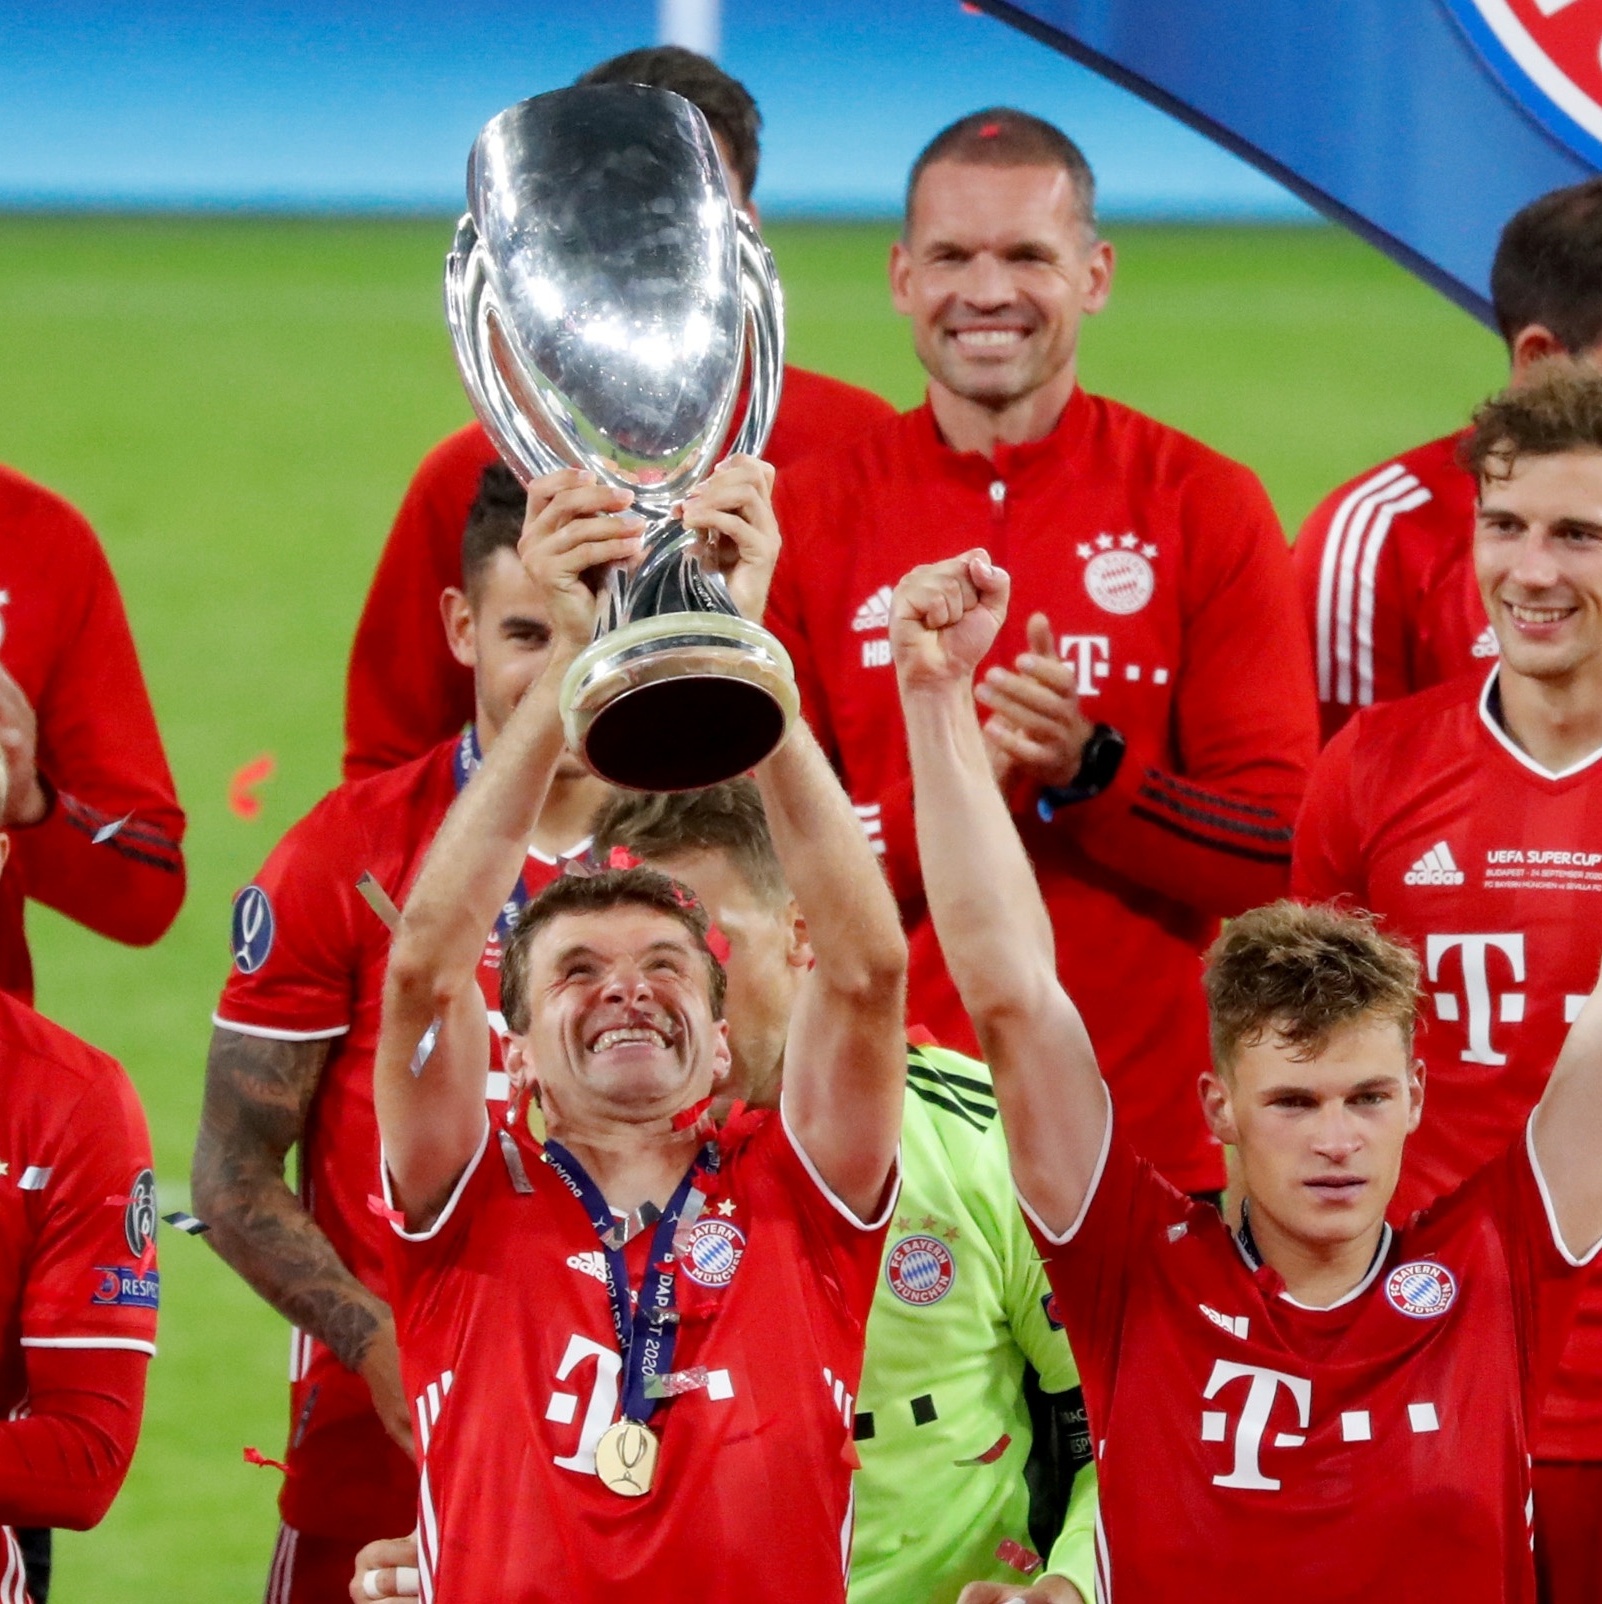 Rodolfo Rodrigues on X: Maiores campeões da Bundesliga (1964-2020): Bayern  Munique já tem mais da metade dos títulos  / X